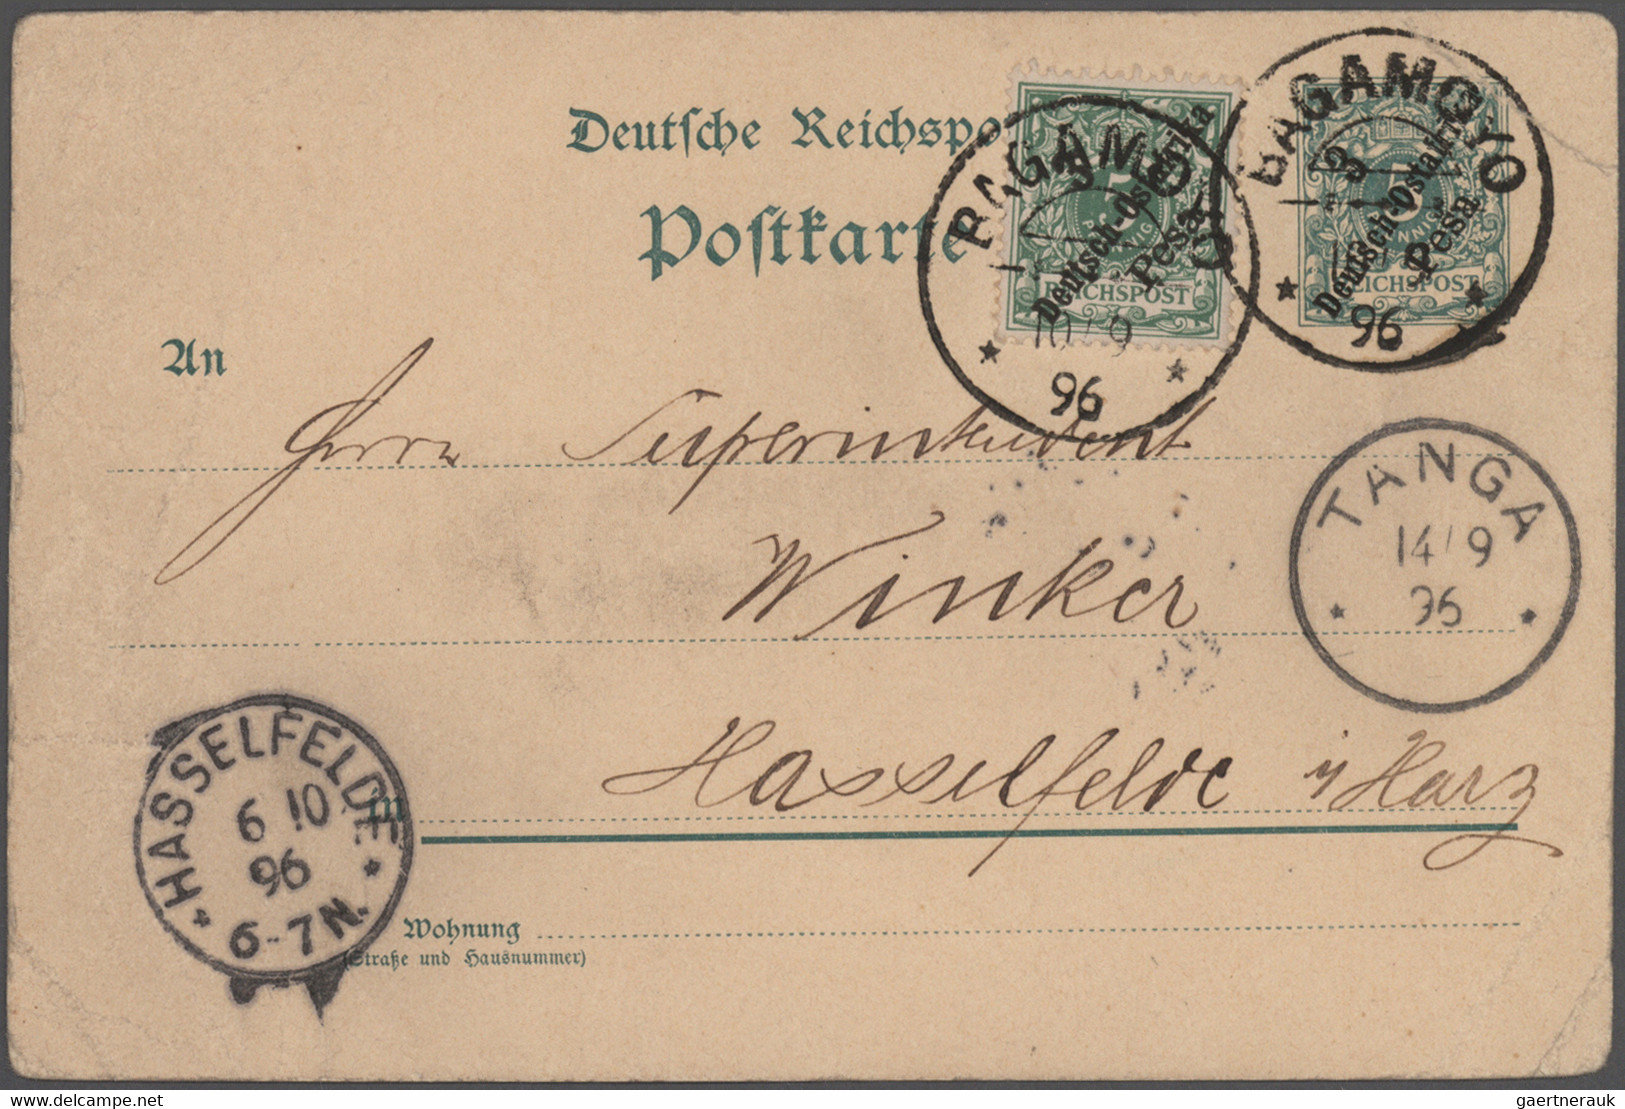 Deutsche Kolonien: 1899/1915, saubere Ganzsachen-Sammlung von China bis Togo mit ca. 300 Stück teils